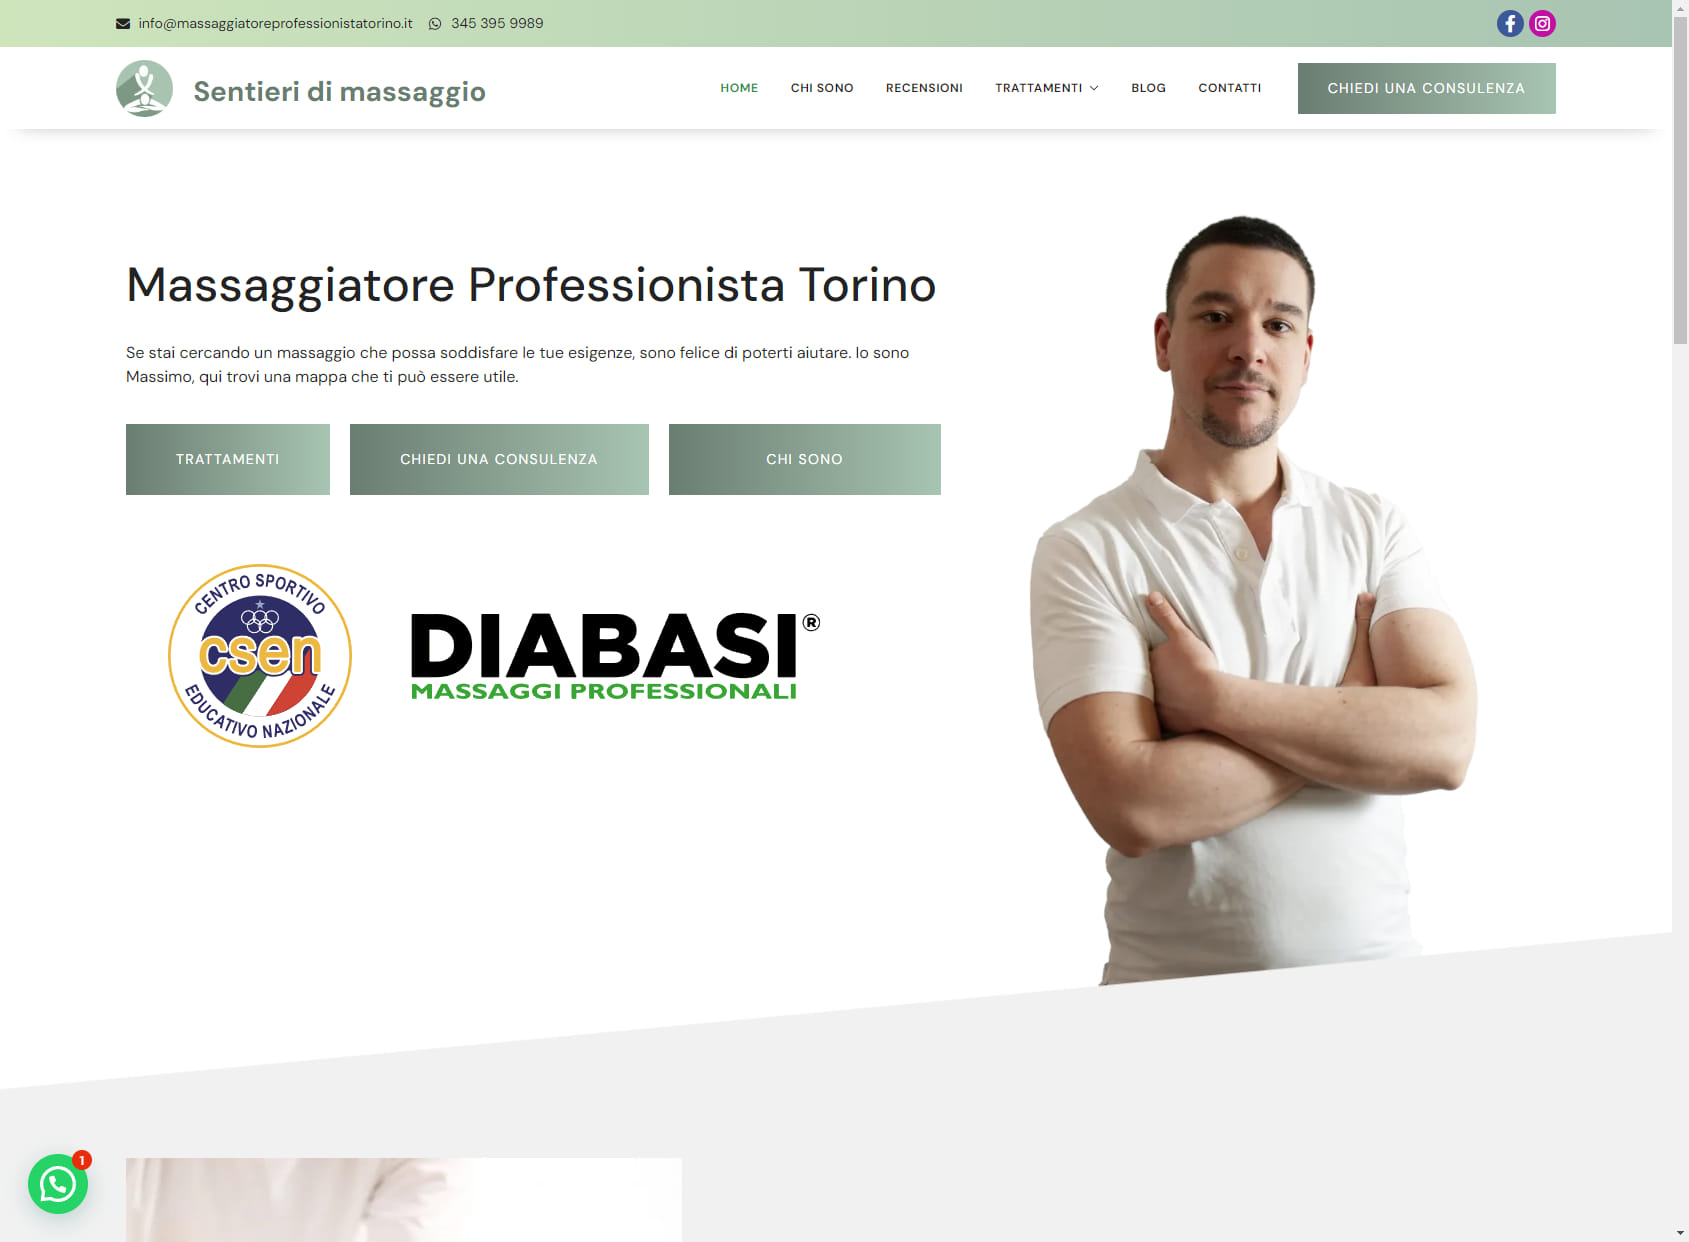 Massaggiatore Professionista Torino - Sentieri di Massaggio